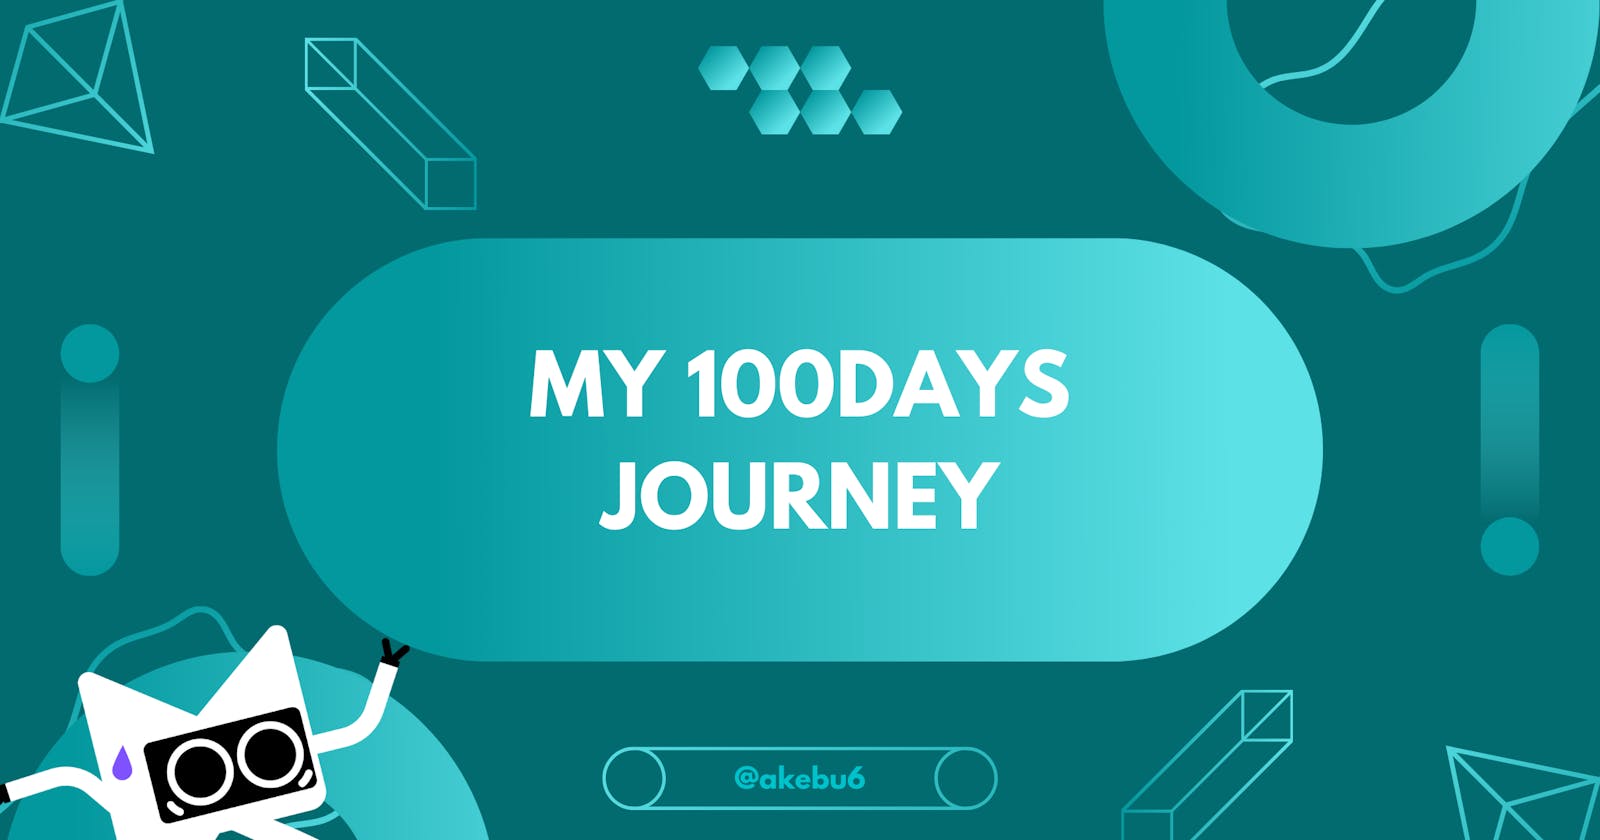 My 100Days Journey